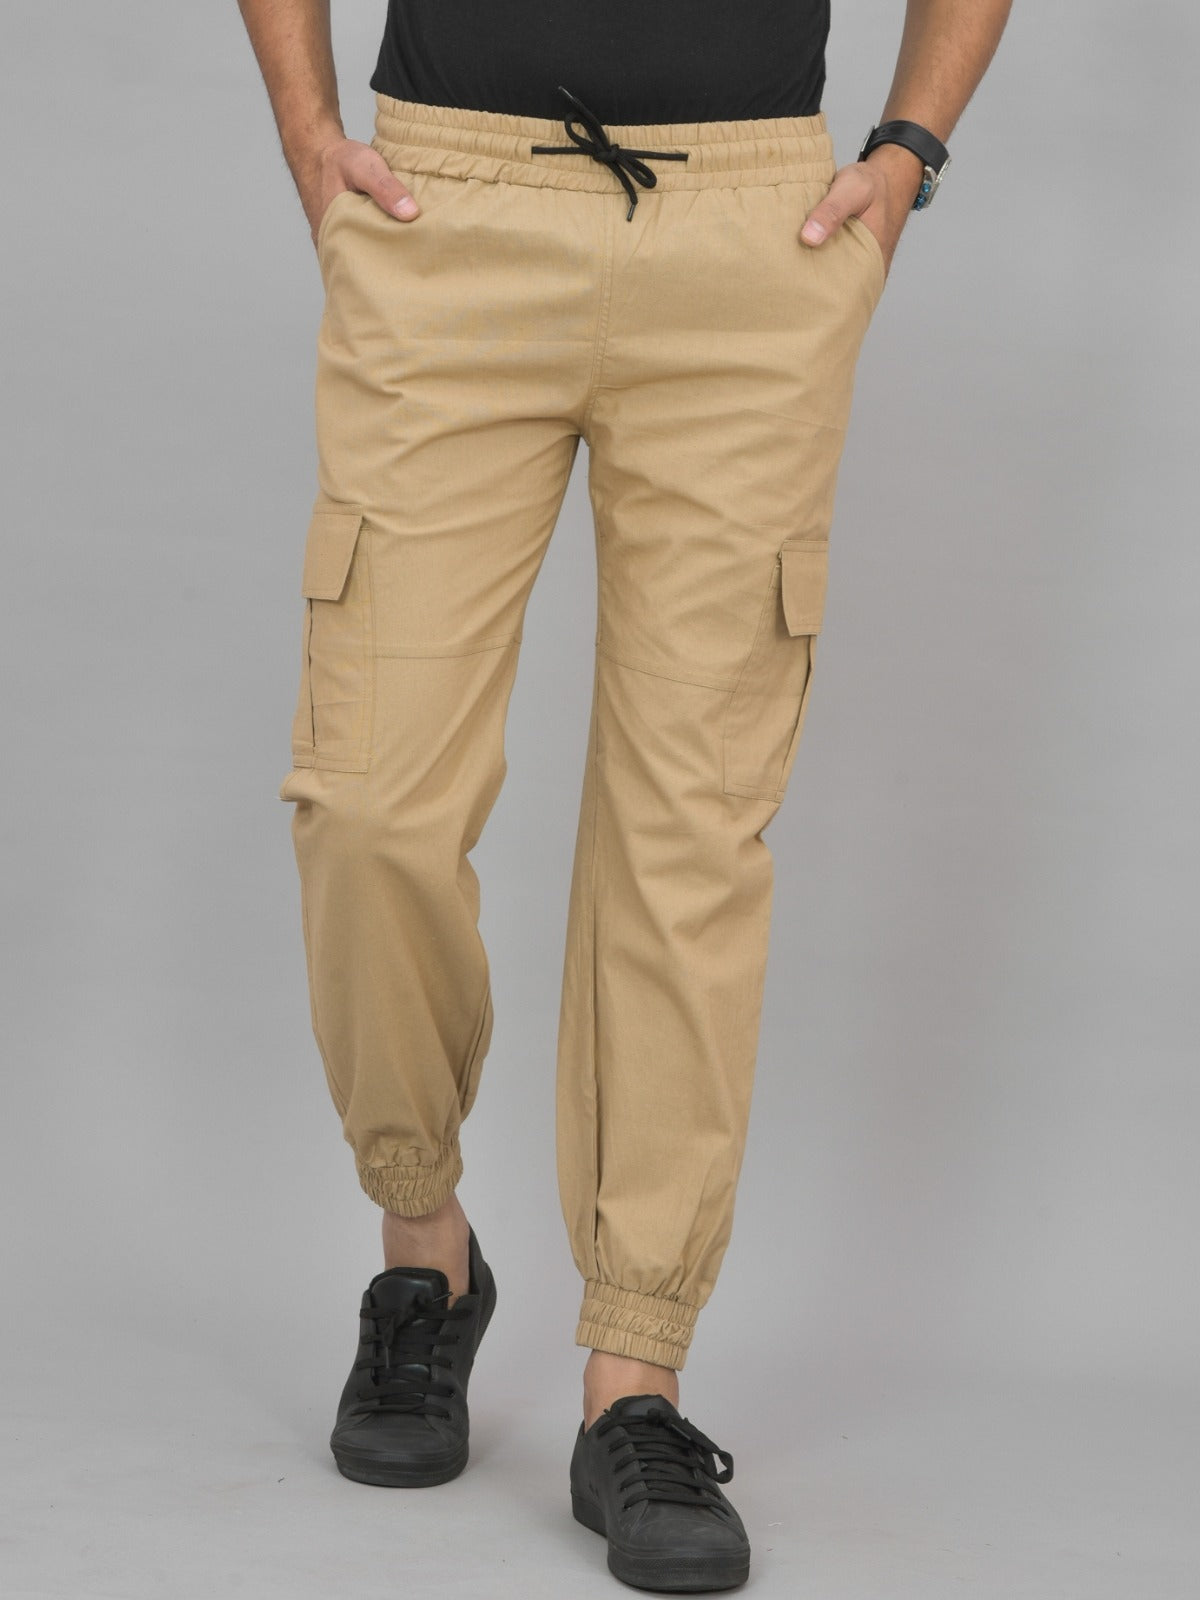 Men's Pants Combo – Sure-Fit Designs Australia